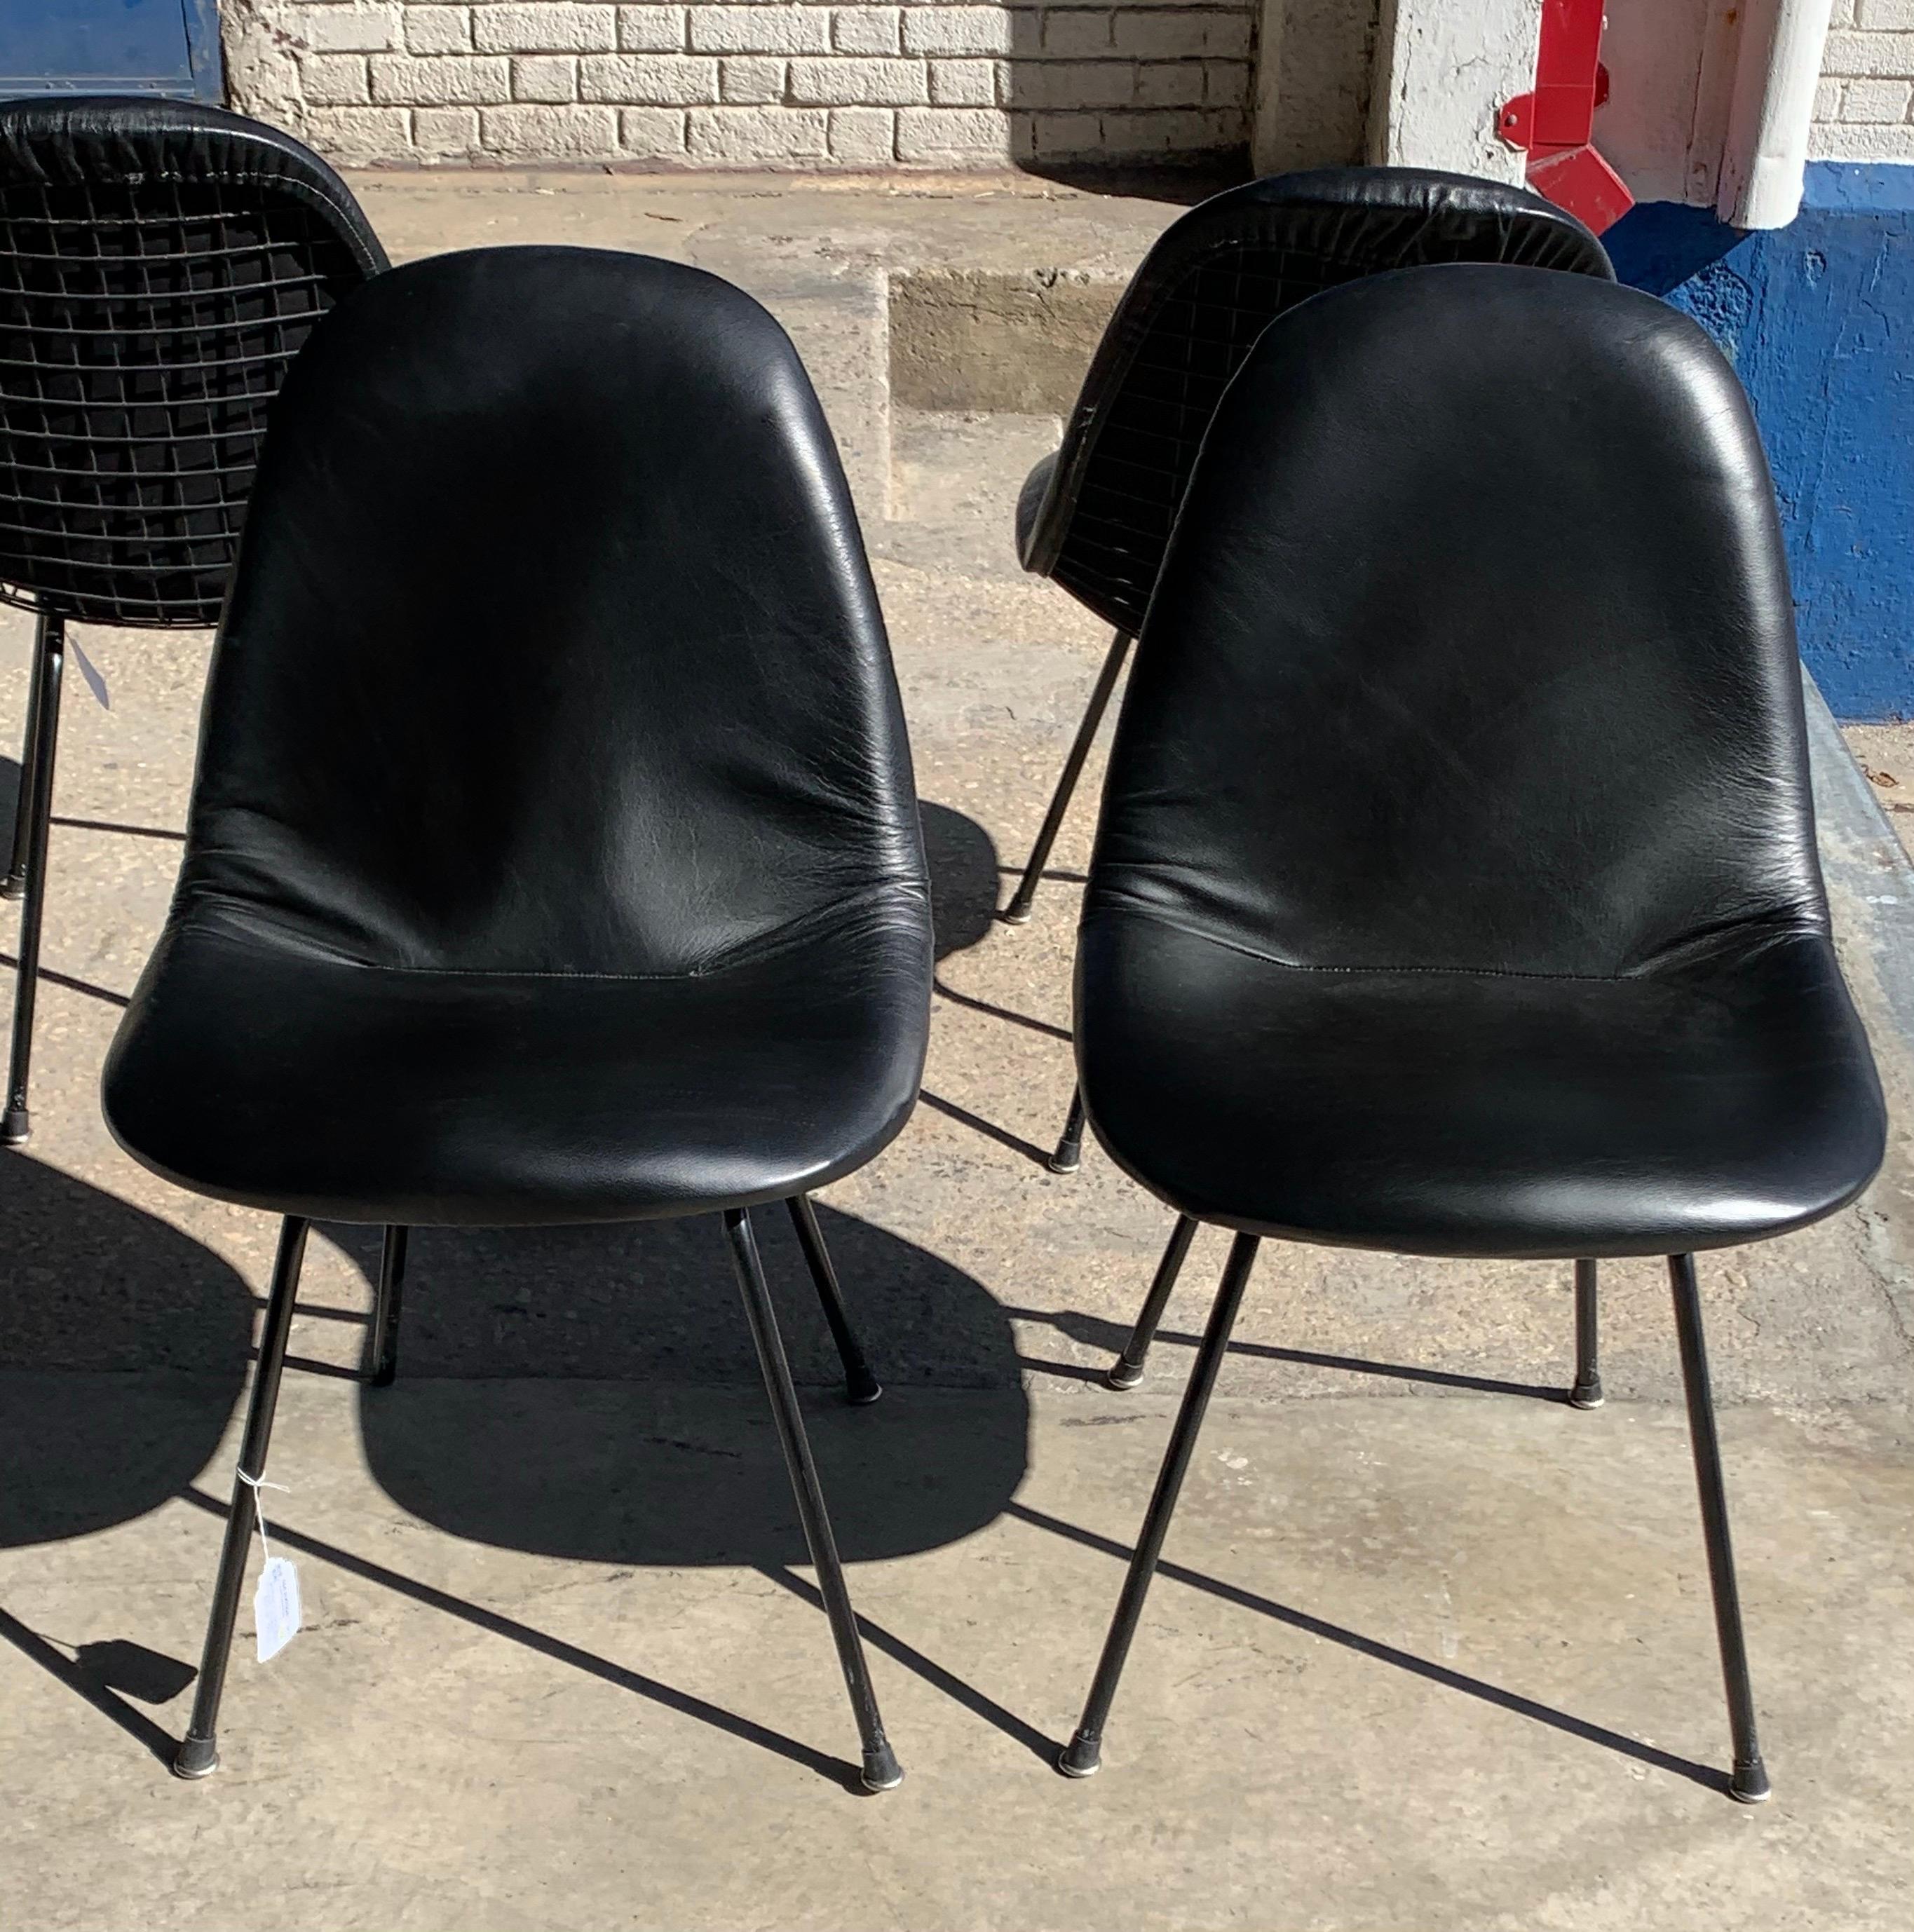 Charles and Ray Eames for Herman Miller DKX-1 chair, black leather, H-base, circa 1954, Boot glides .Pricing is per chair. Veuillez changer la quantité à 4 pour acheter le set complet.

L'abréviation de la chaise Eames DKX, qui fait partie de la